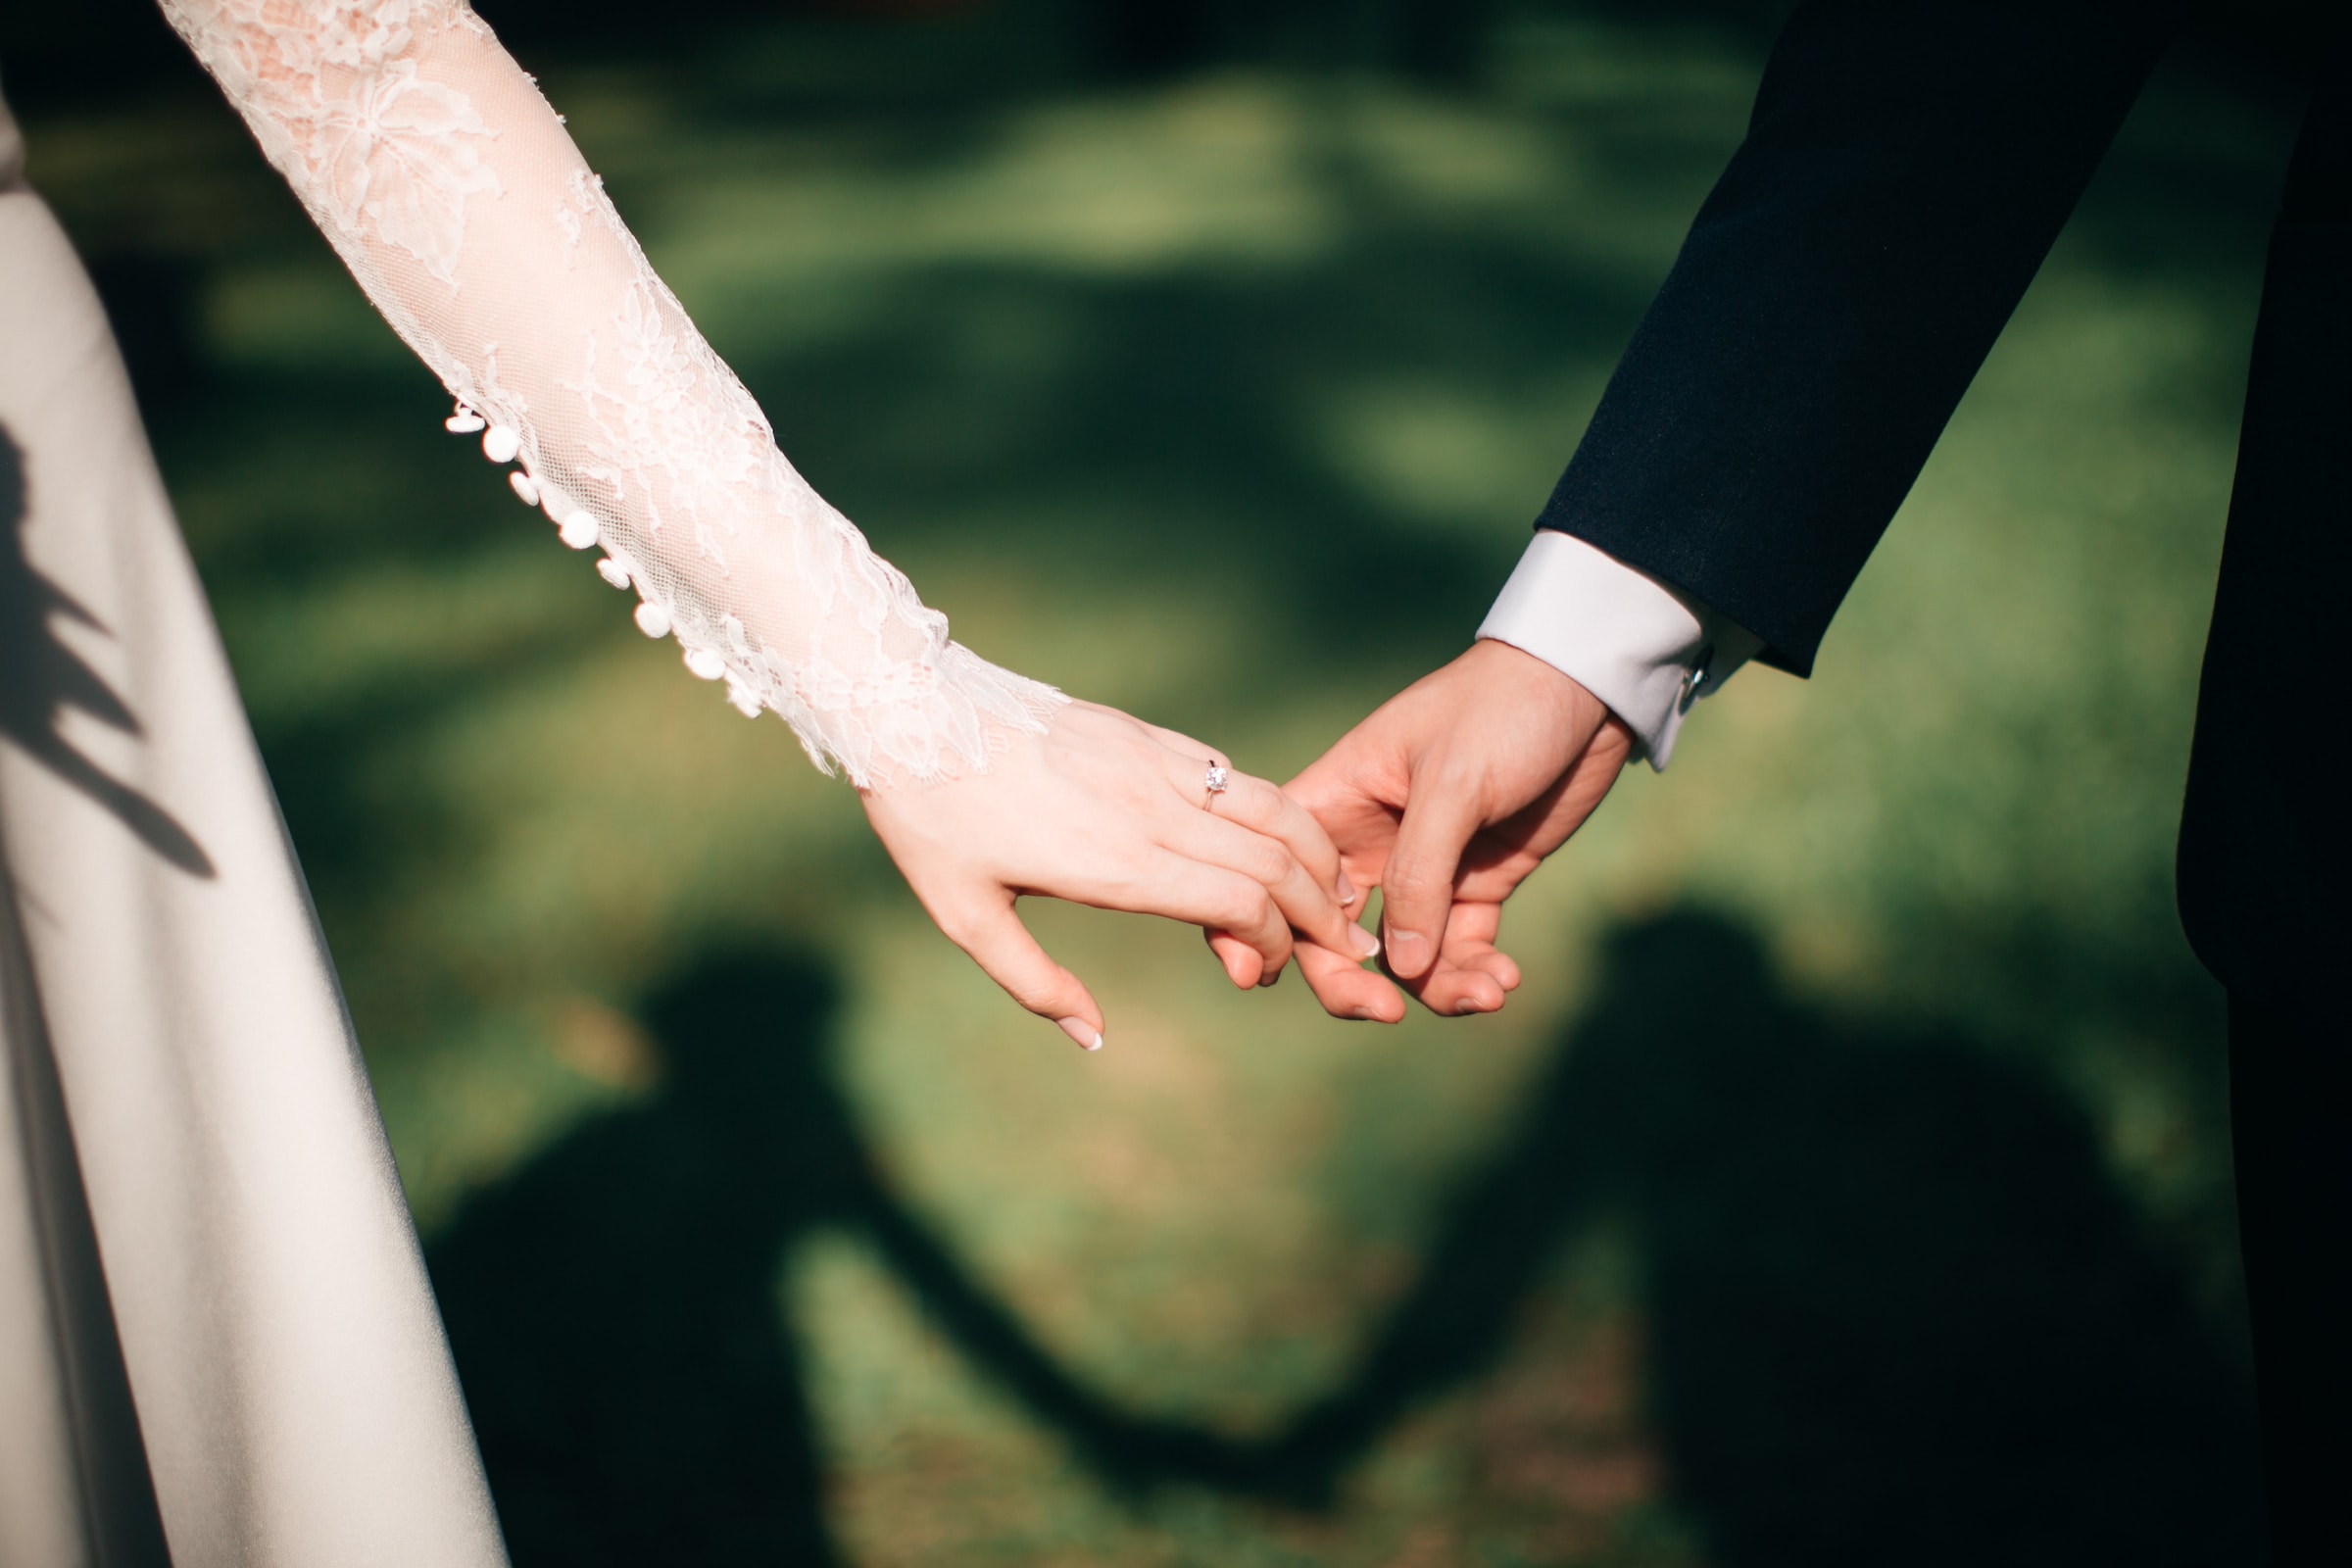 Verheiratetes Paar hält sich an den Händen | Quelle: Unsplash